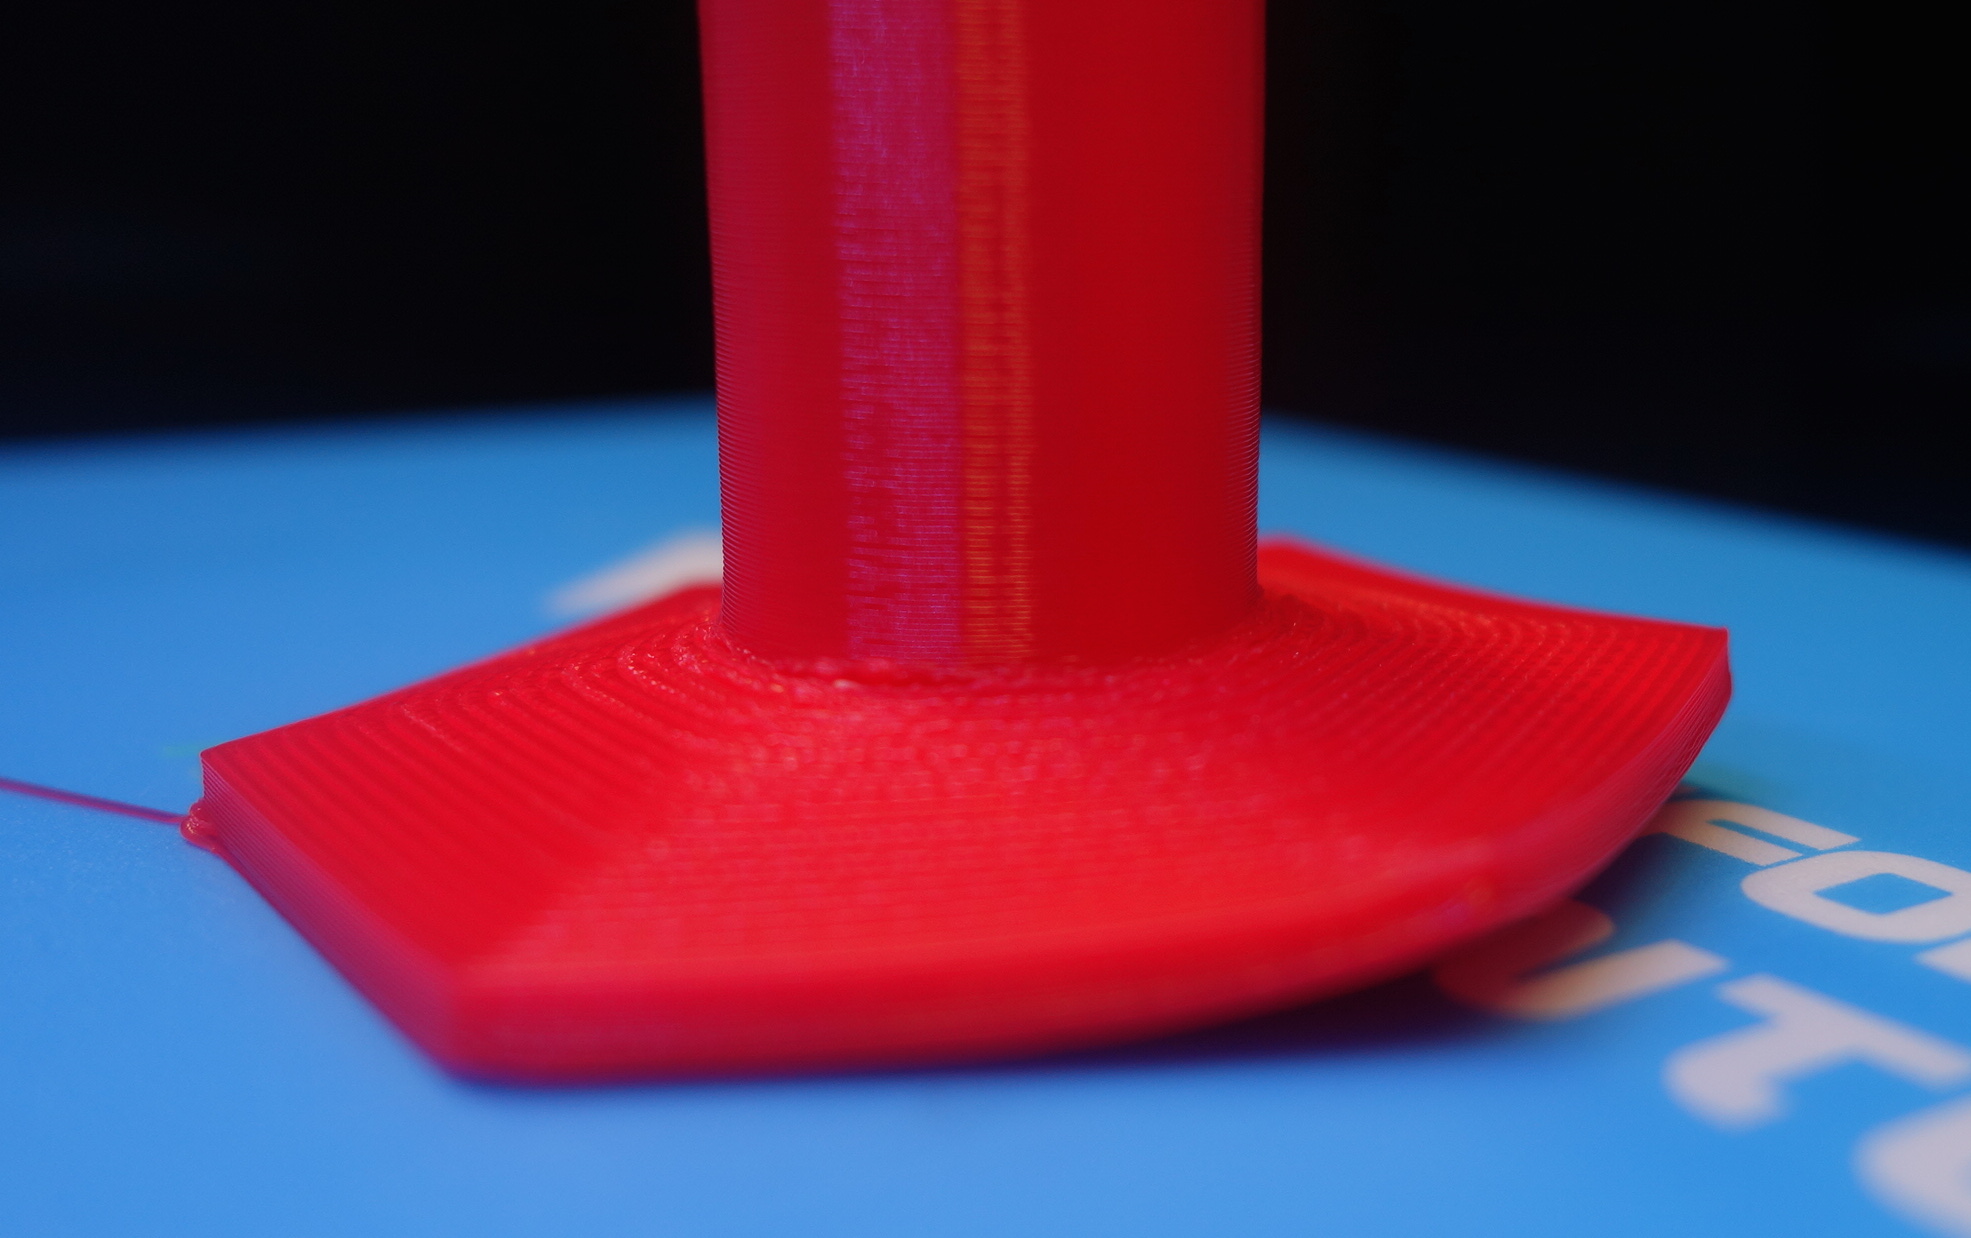 adhesion and upward warping problems - 3D Printing / Materials